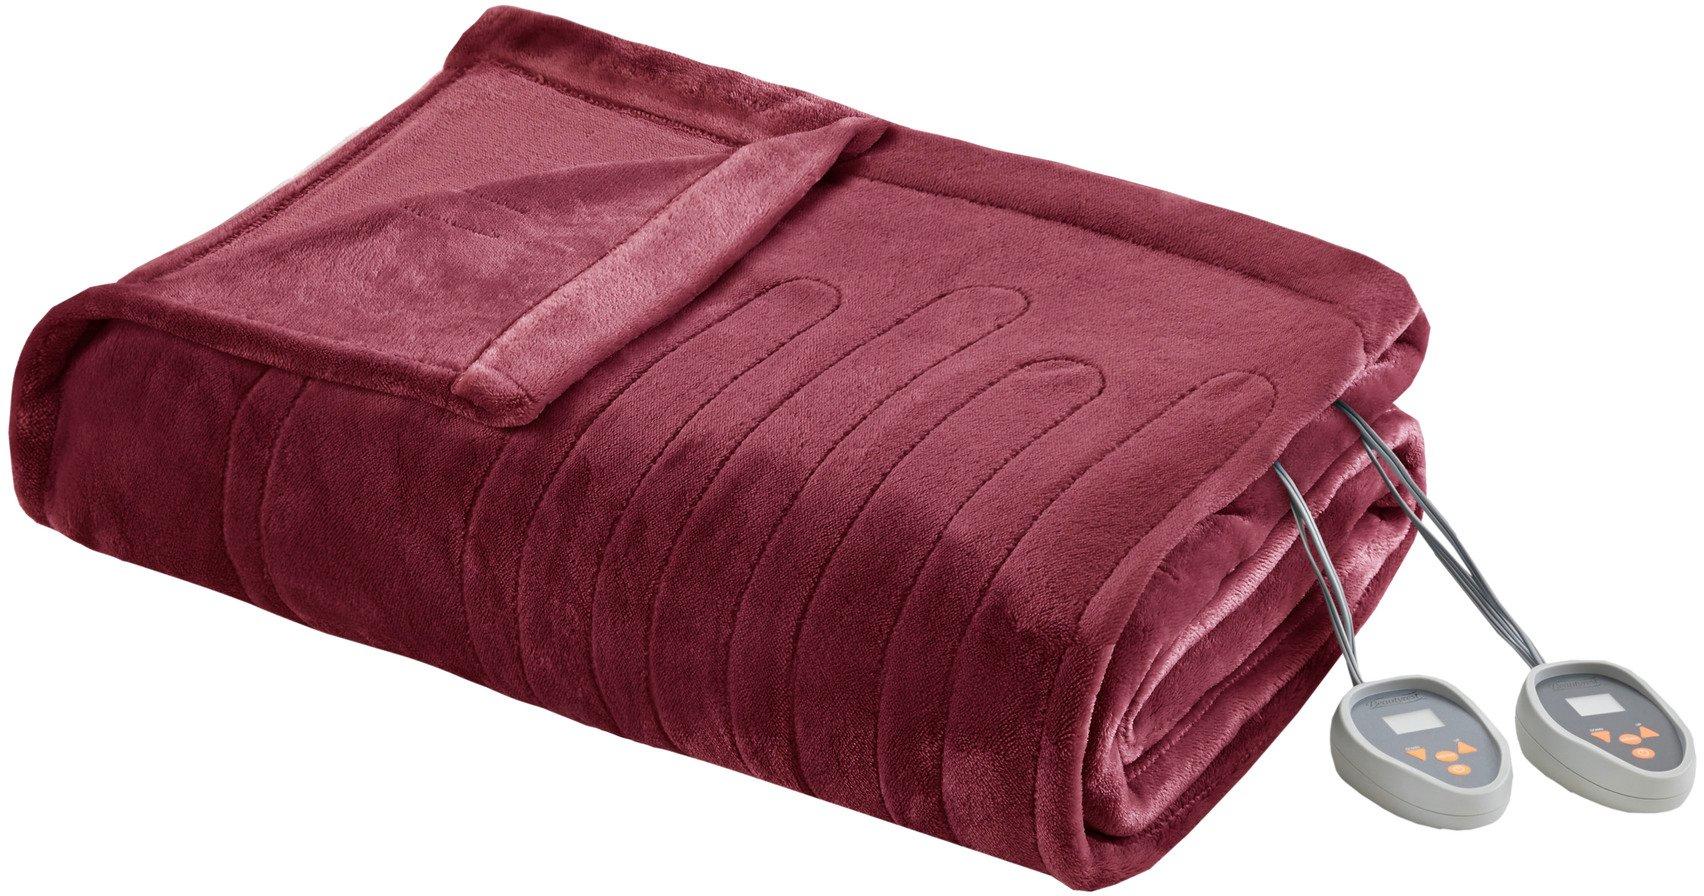 Beautyrest Plush Heated Blanket